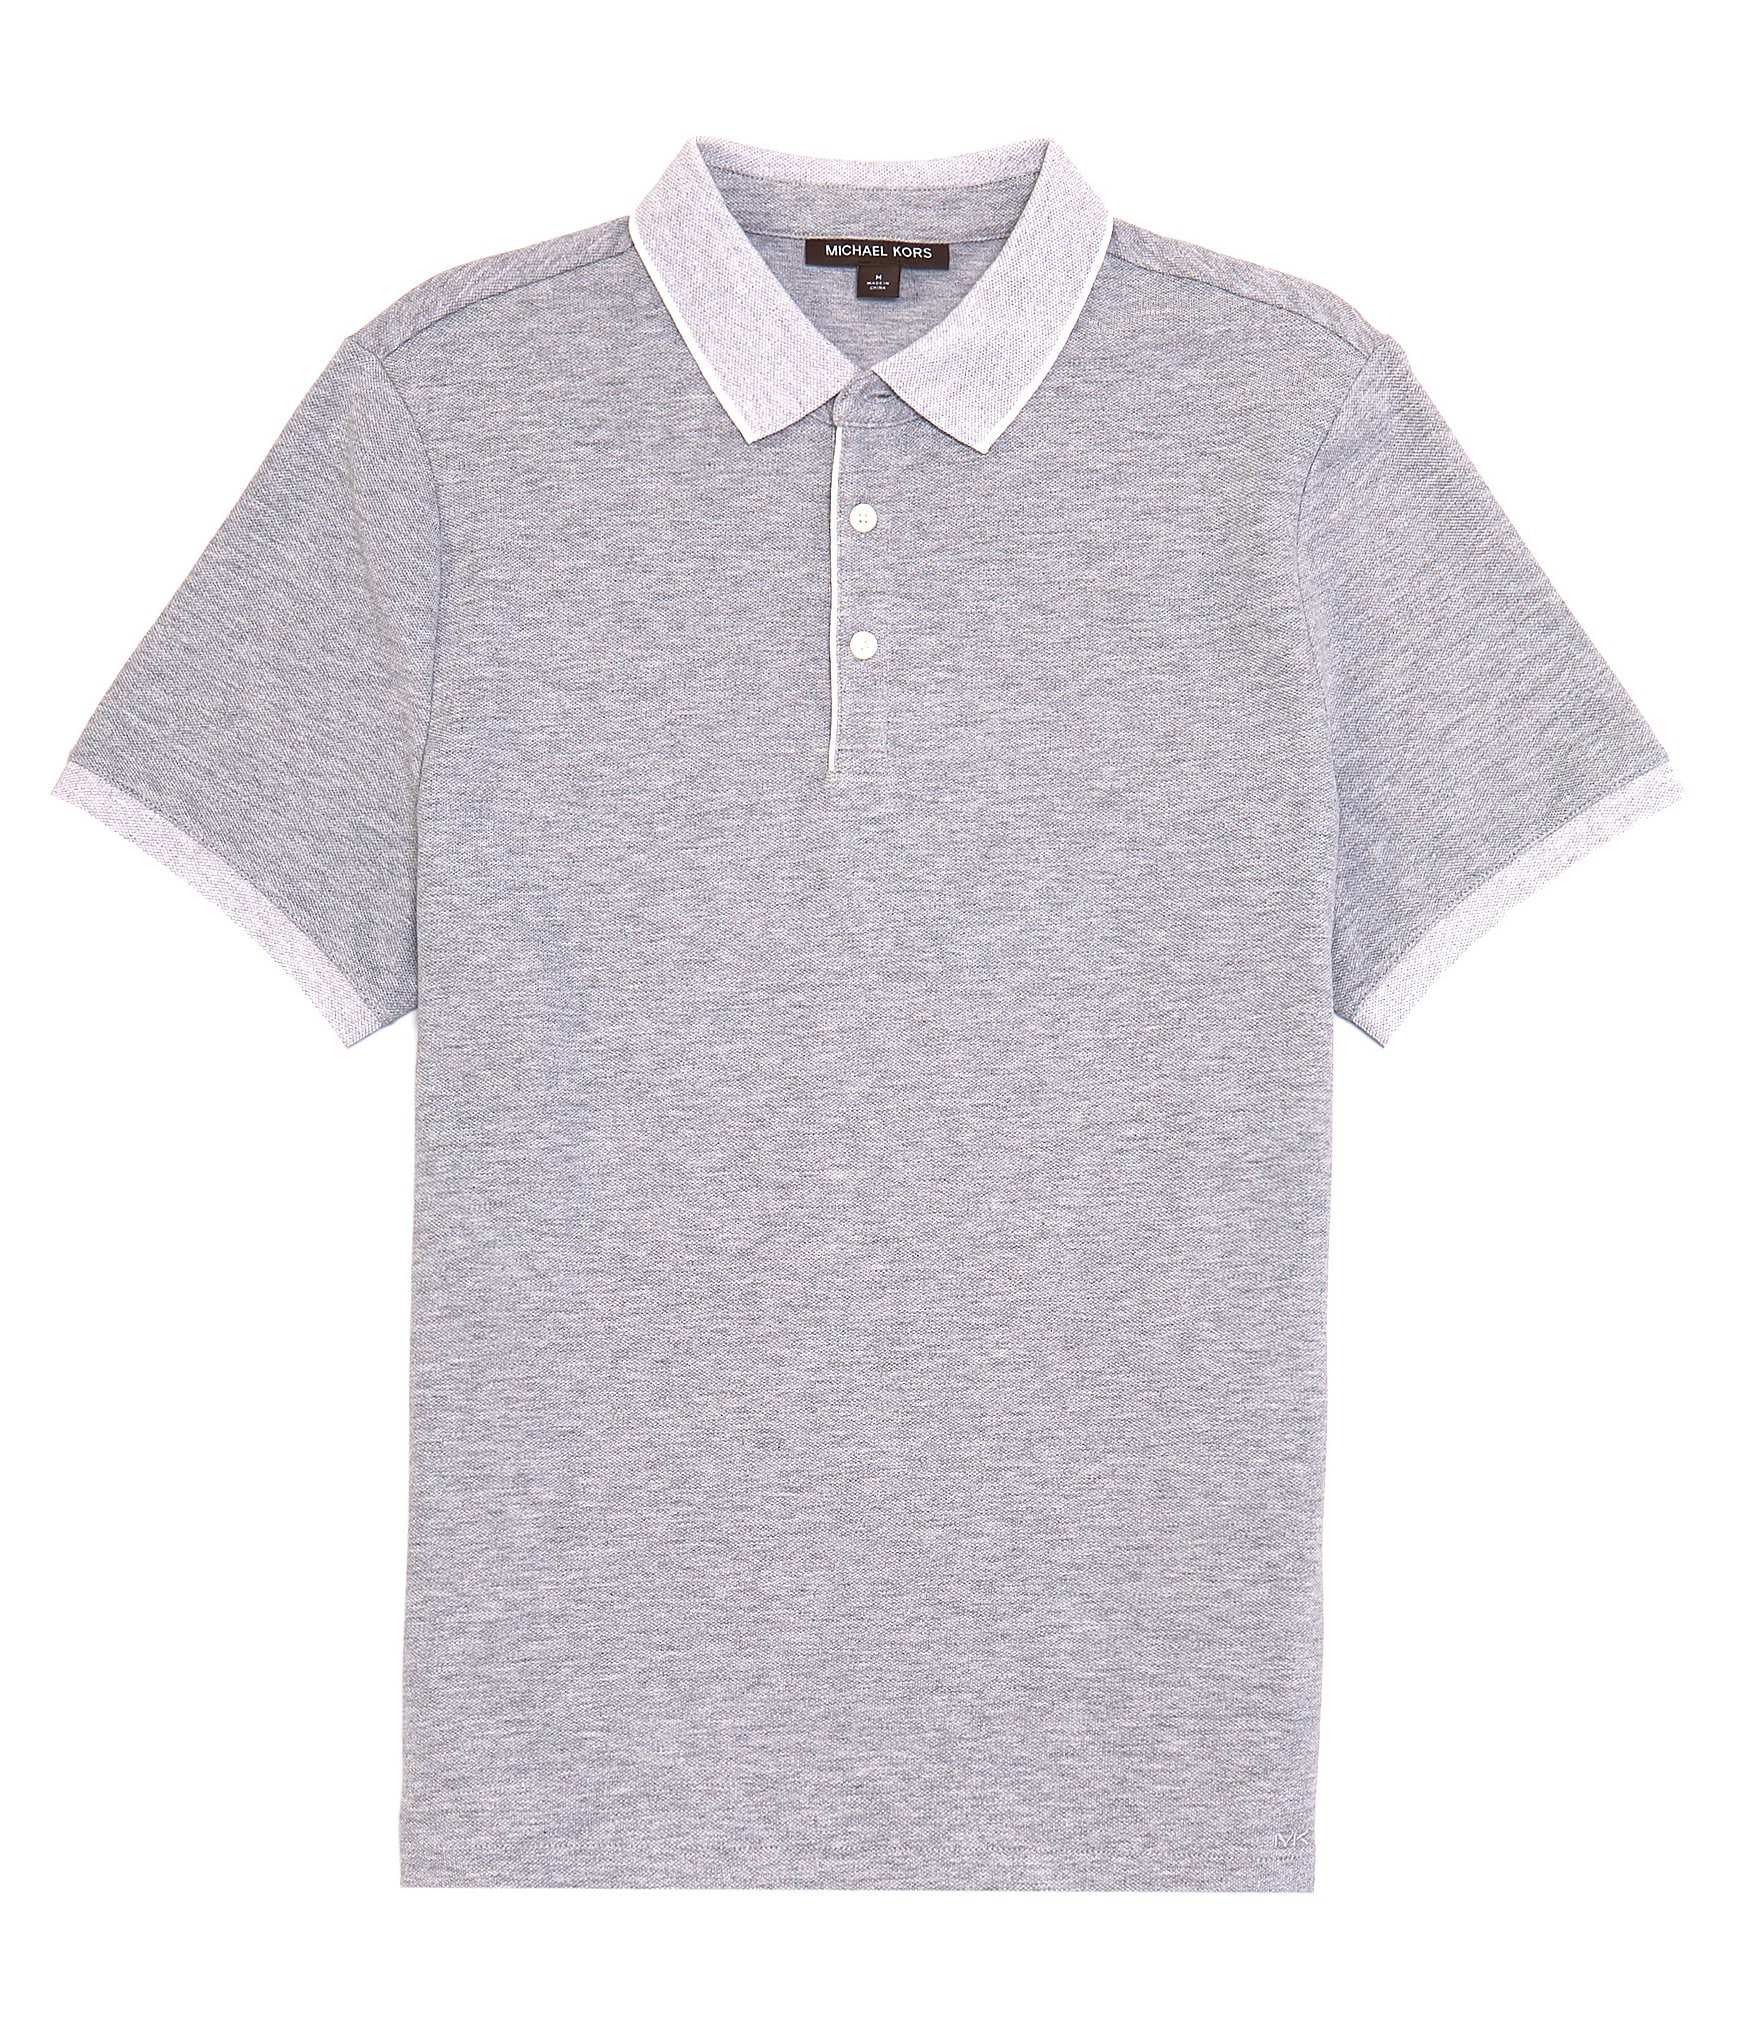 Michael Kors Textured Tipped Short Sleeve Polo Shirt | Dillard's